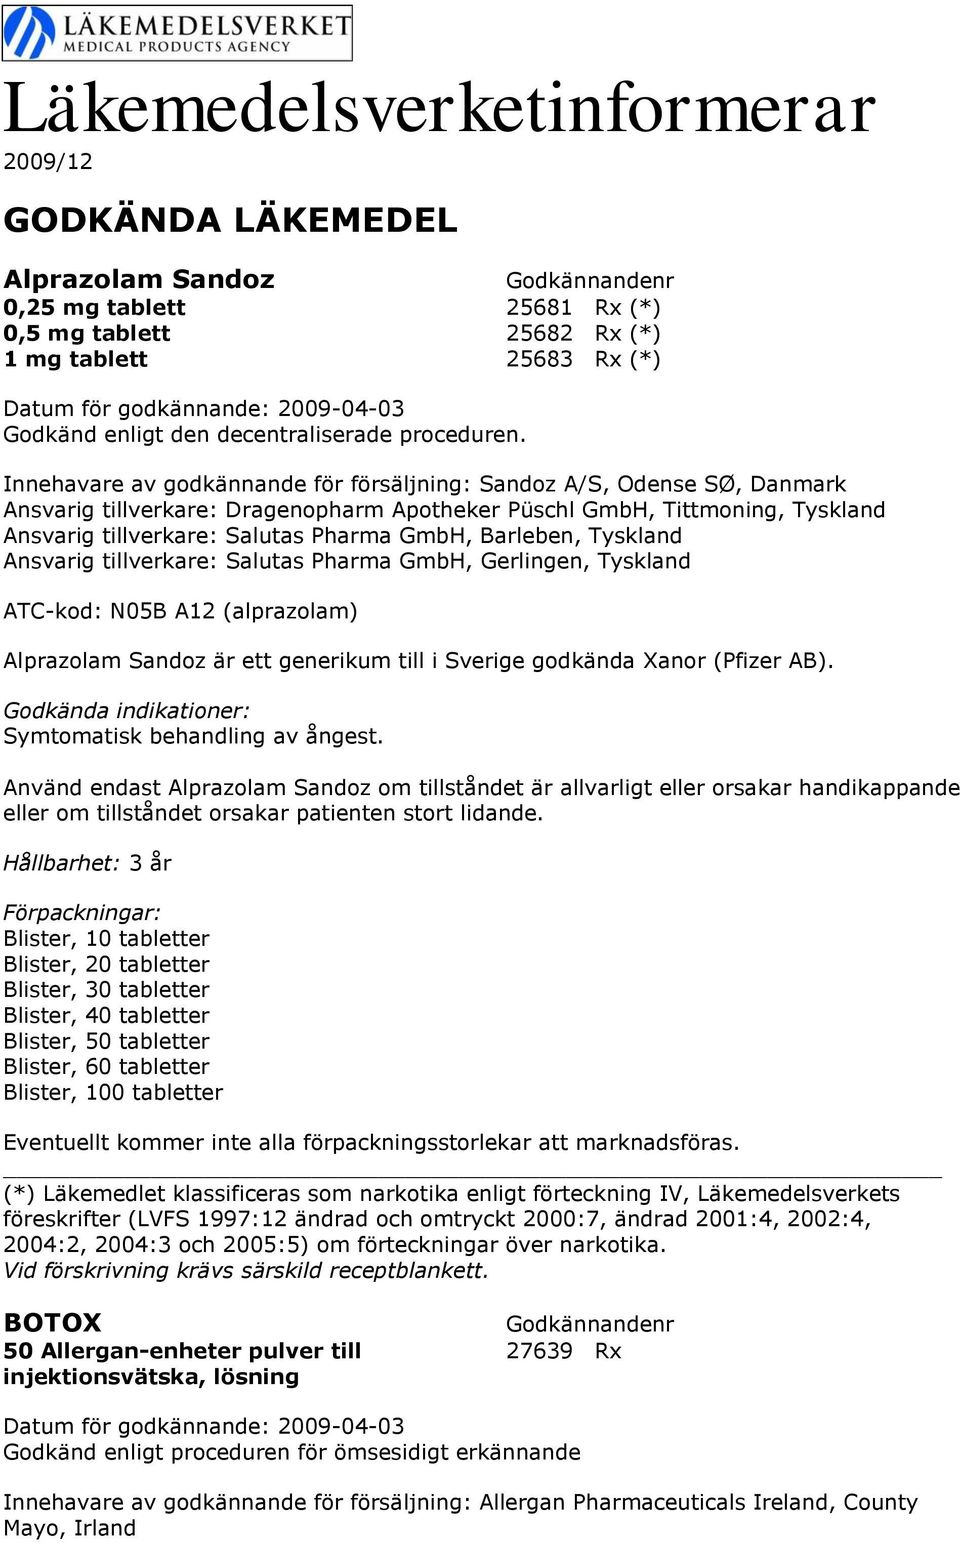 Salutas Pharma GmbH, Gerlingen, Tyskland ATC-kod: N05B A12 (alprazolam) Alprazolam Sandoz är ett generikum till i Sverige godkända Xanor (Pfizer AB). Symtomatisk behandling av ångest.